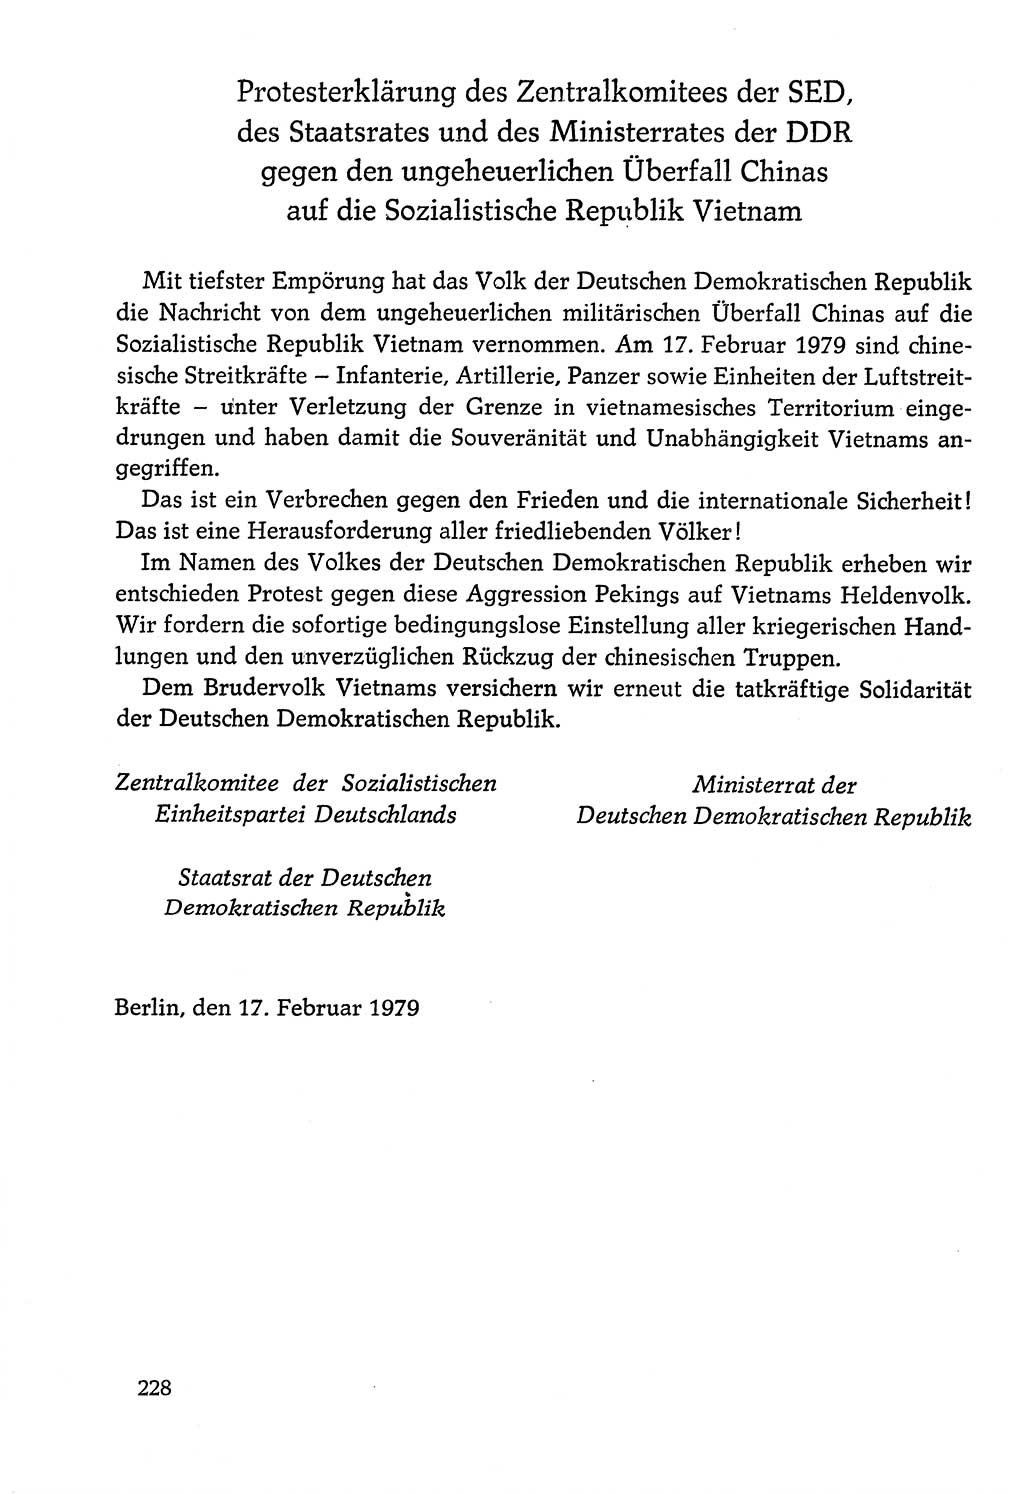 Dokumente der Sozialistischen Einheitspartei Deutschlands (SED) [Deutsche Demokratische Republik (DDR)] 1978-1979, Seite 228 (Dok. SED DDR 1978-1979, S. 228)